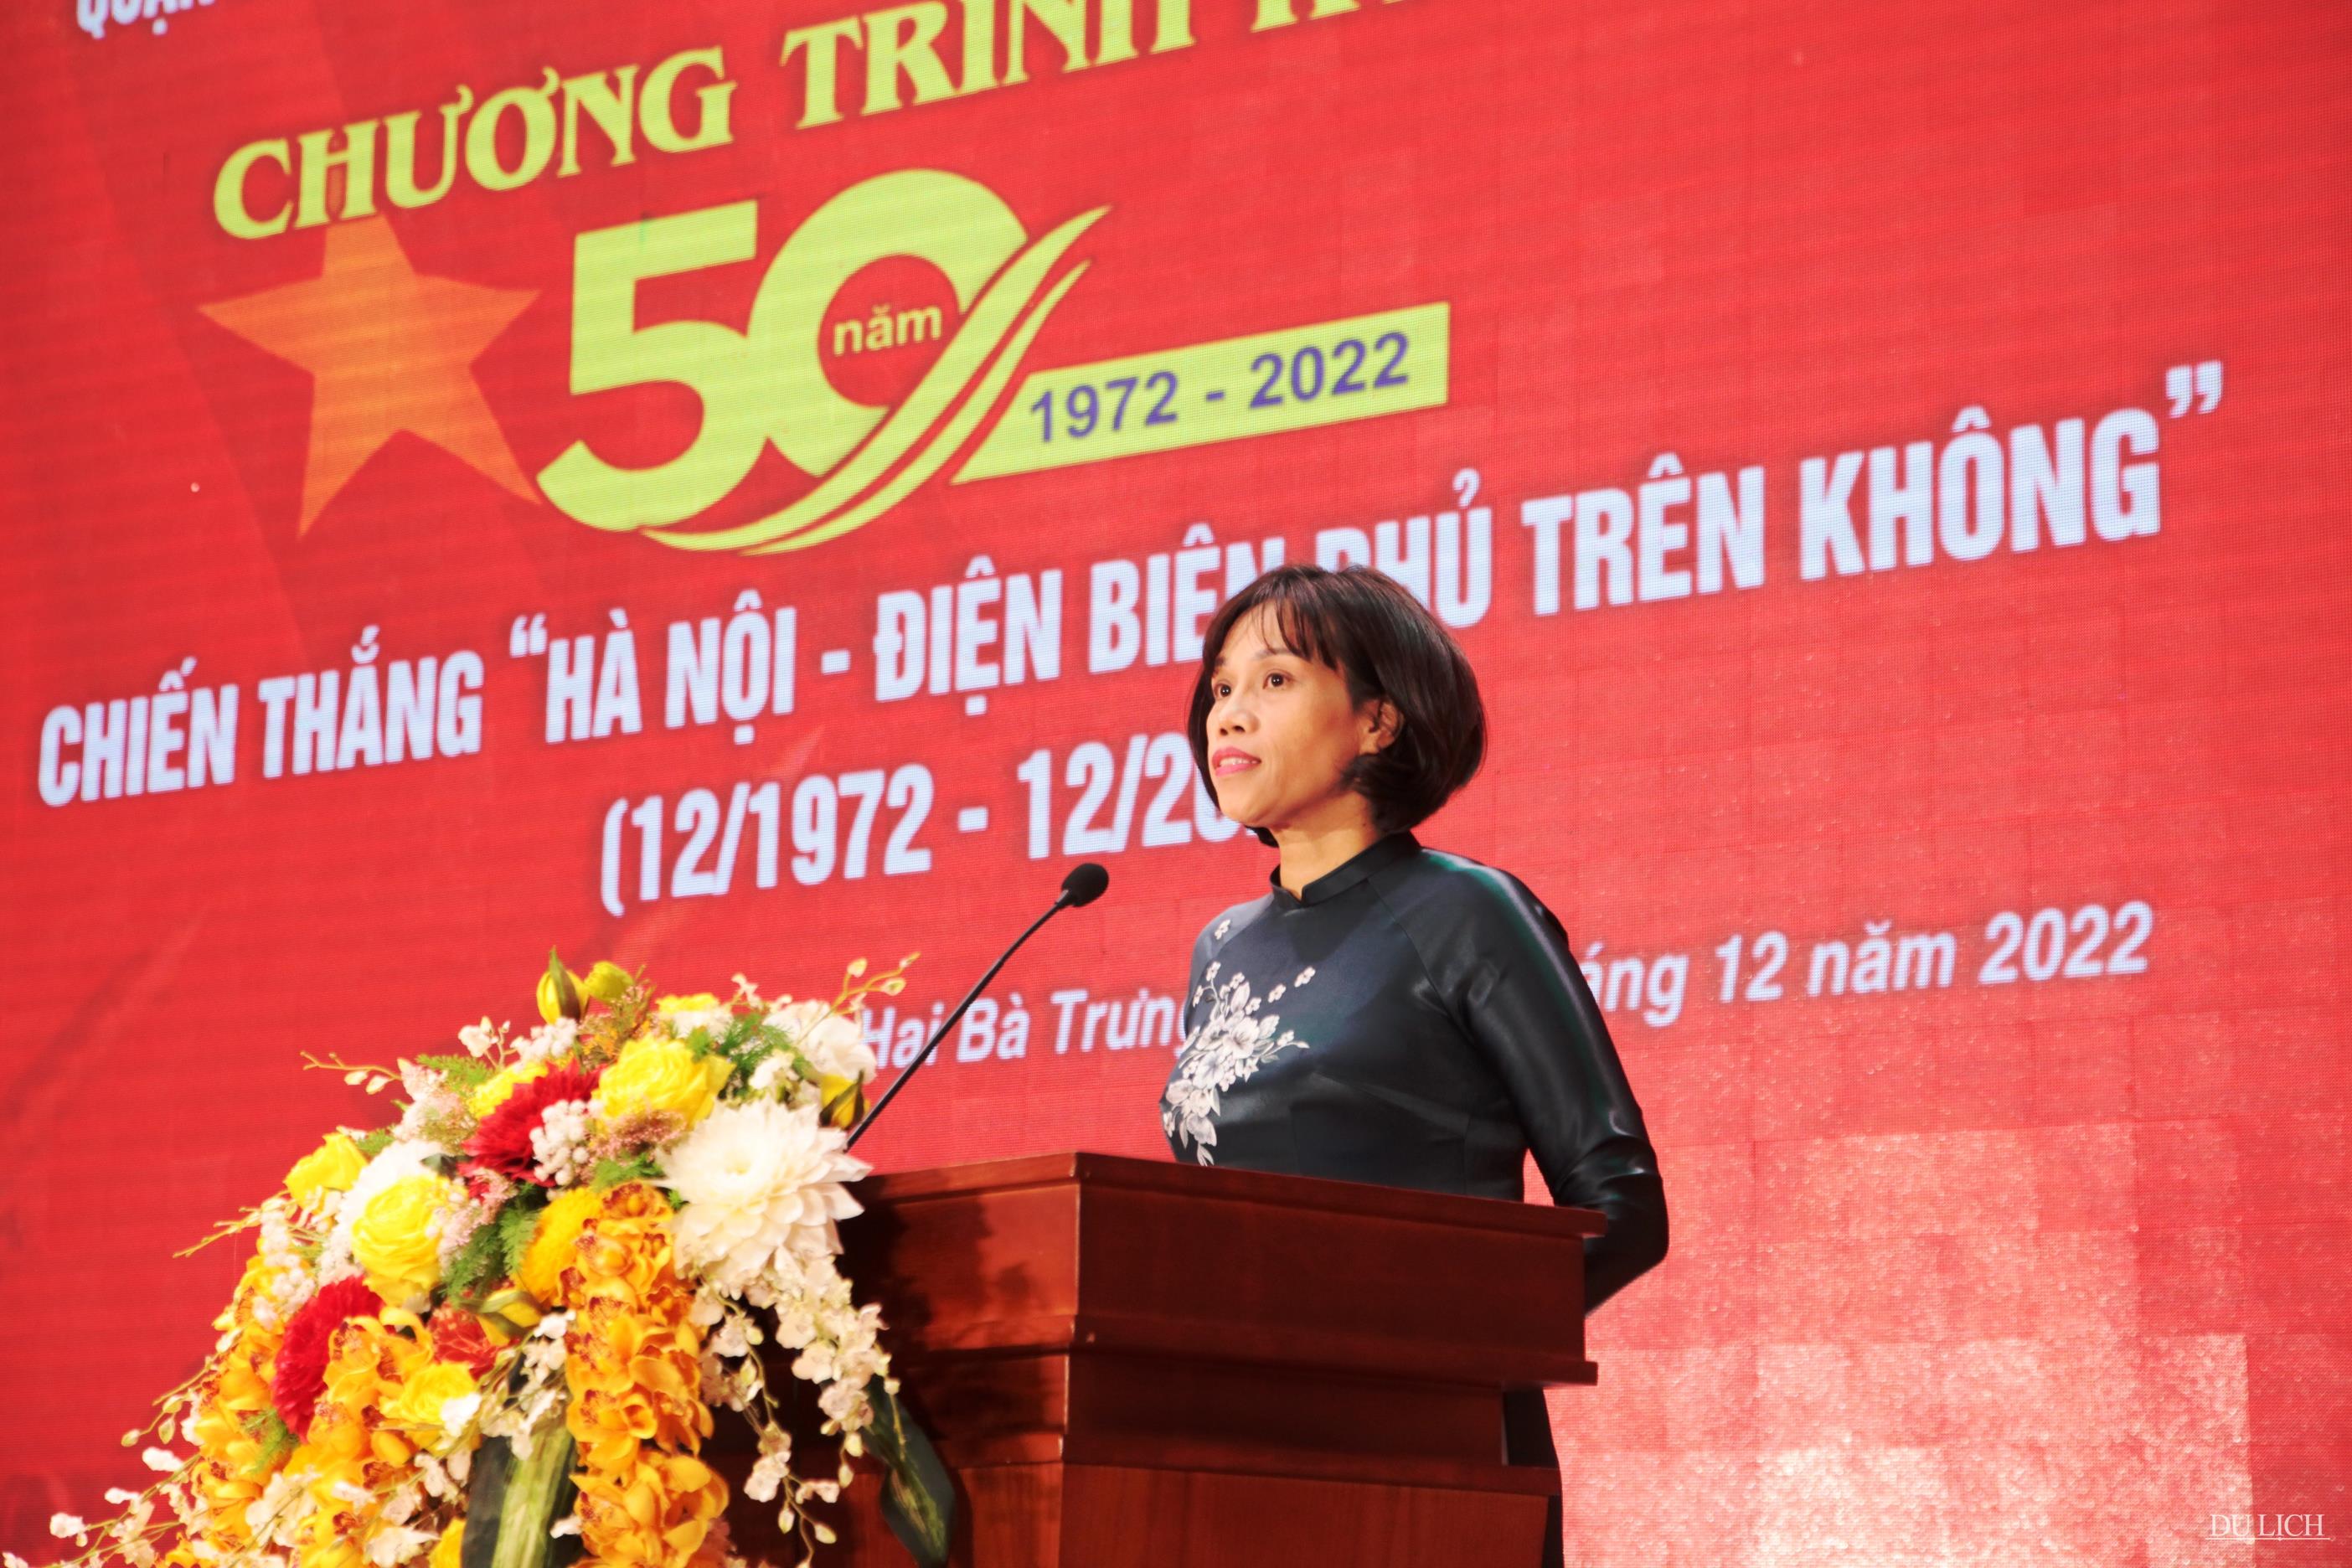  Phó Chủ tịch UBND quận Hại Bà Trưng Nguyễn Thị Thu Hiền đọc diễn văn tại lễ kỷ niệm